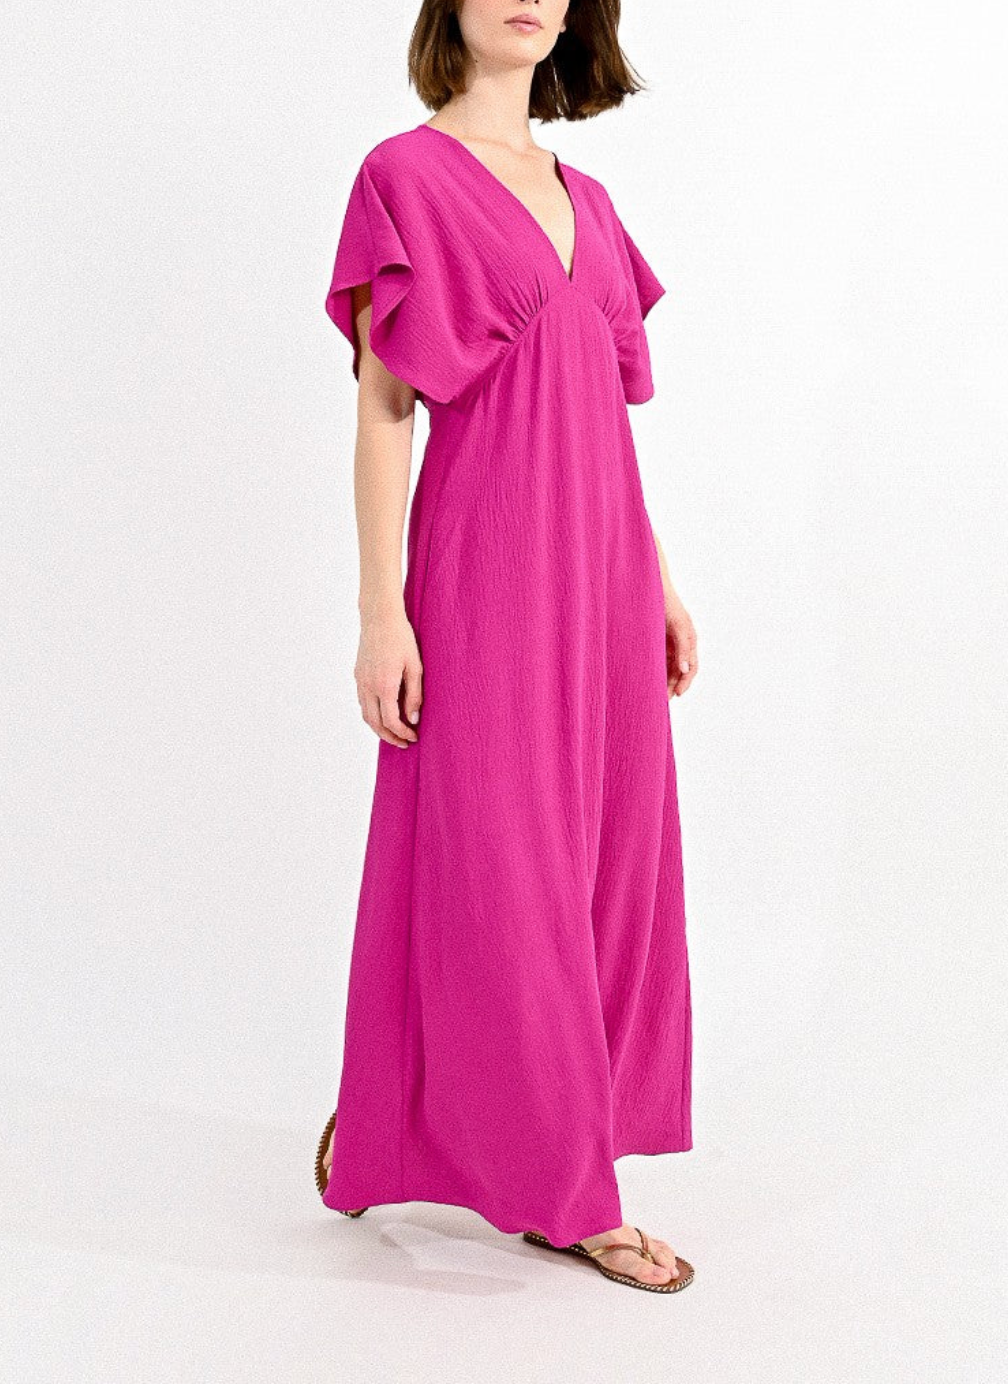 Violet Long Dress